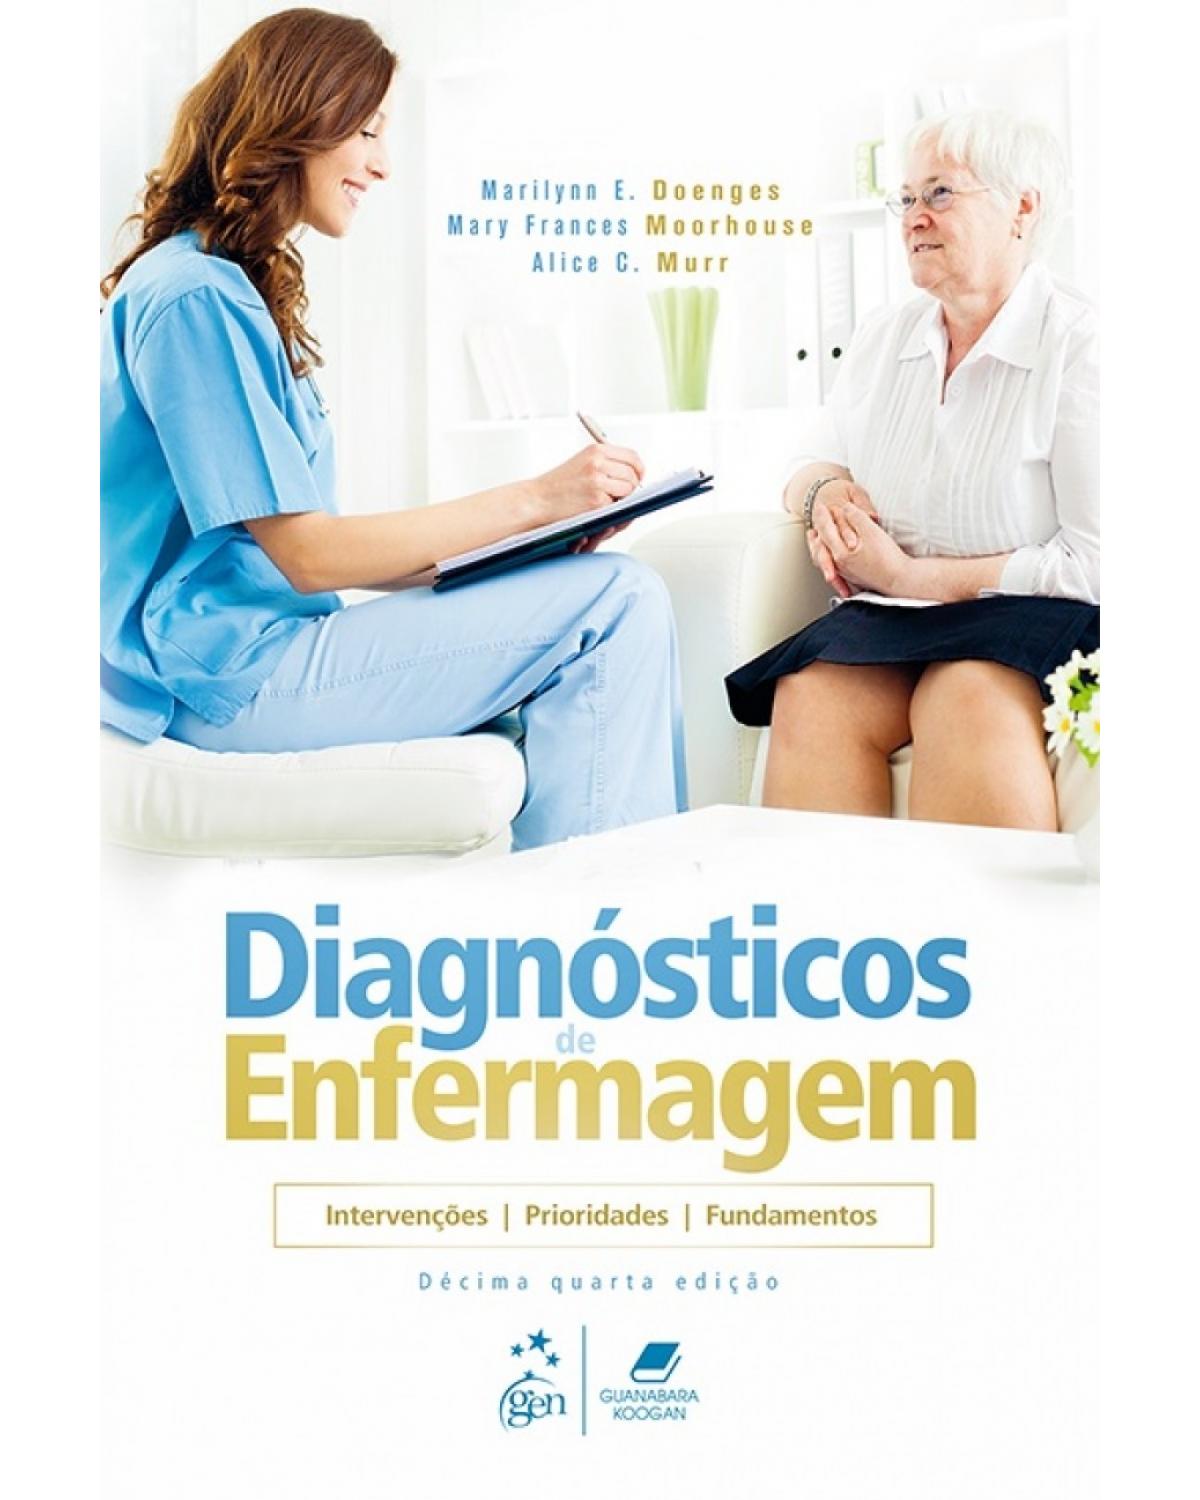 Diagnósticos de enfermagem - intervenções, prioridades, fundamentos - 14ª Edição | 2018